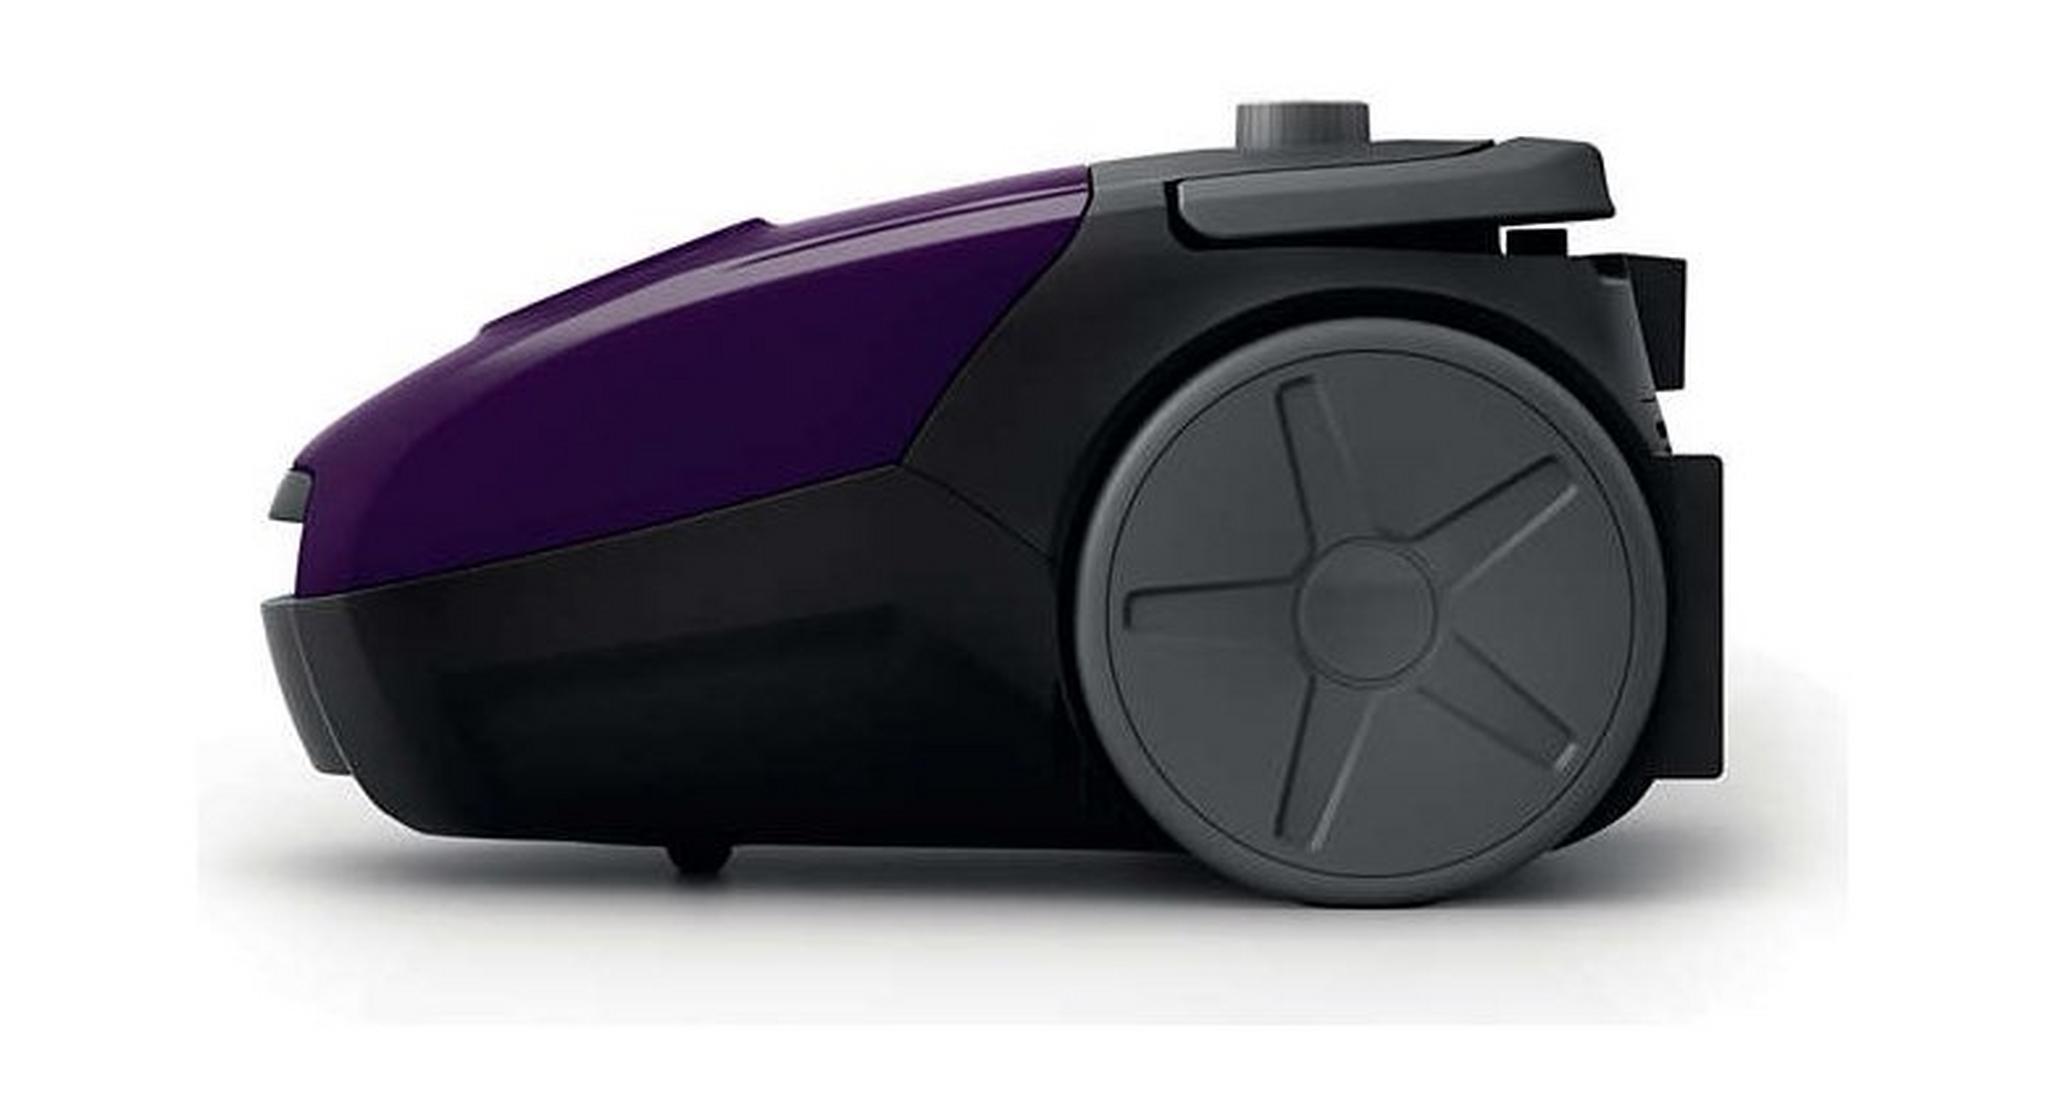 Philips PowerGo 2000W Bag Vacuum Cleaner (FC8295) - Violet